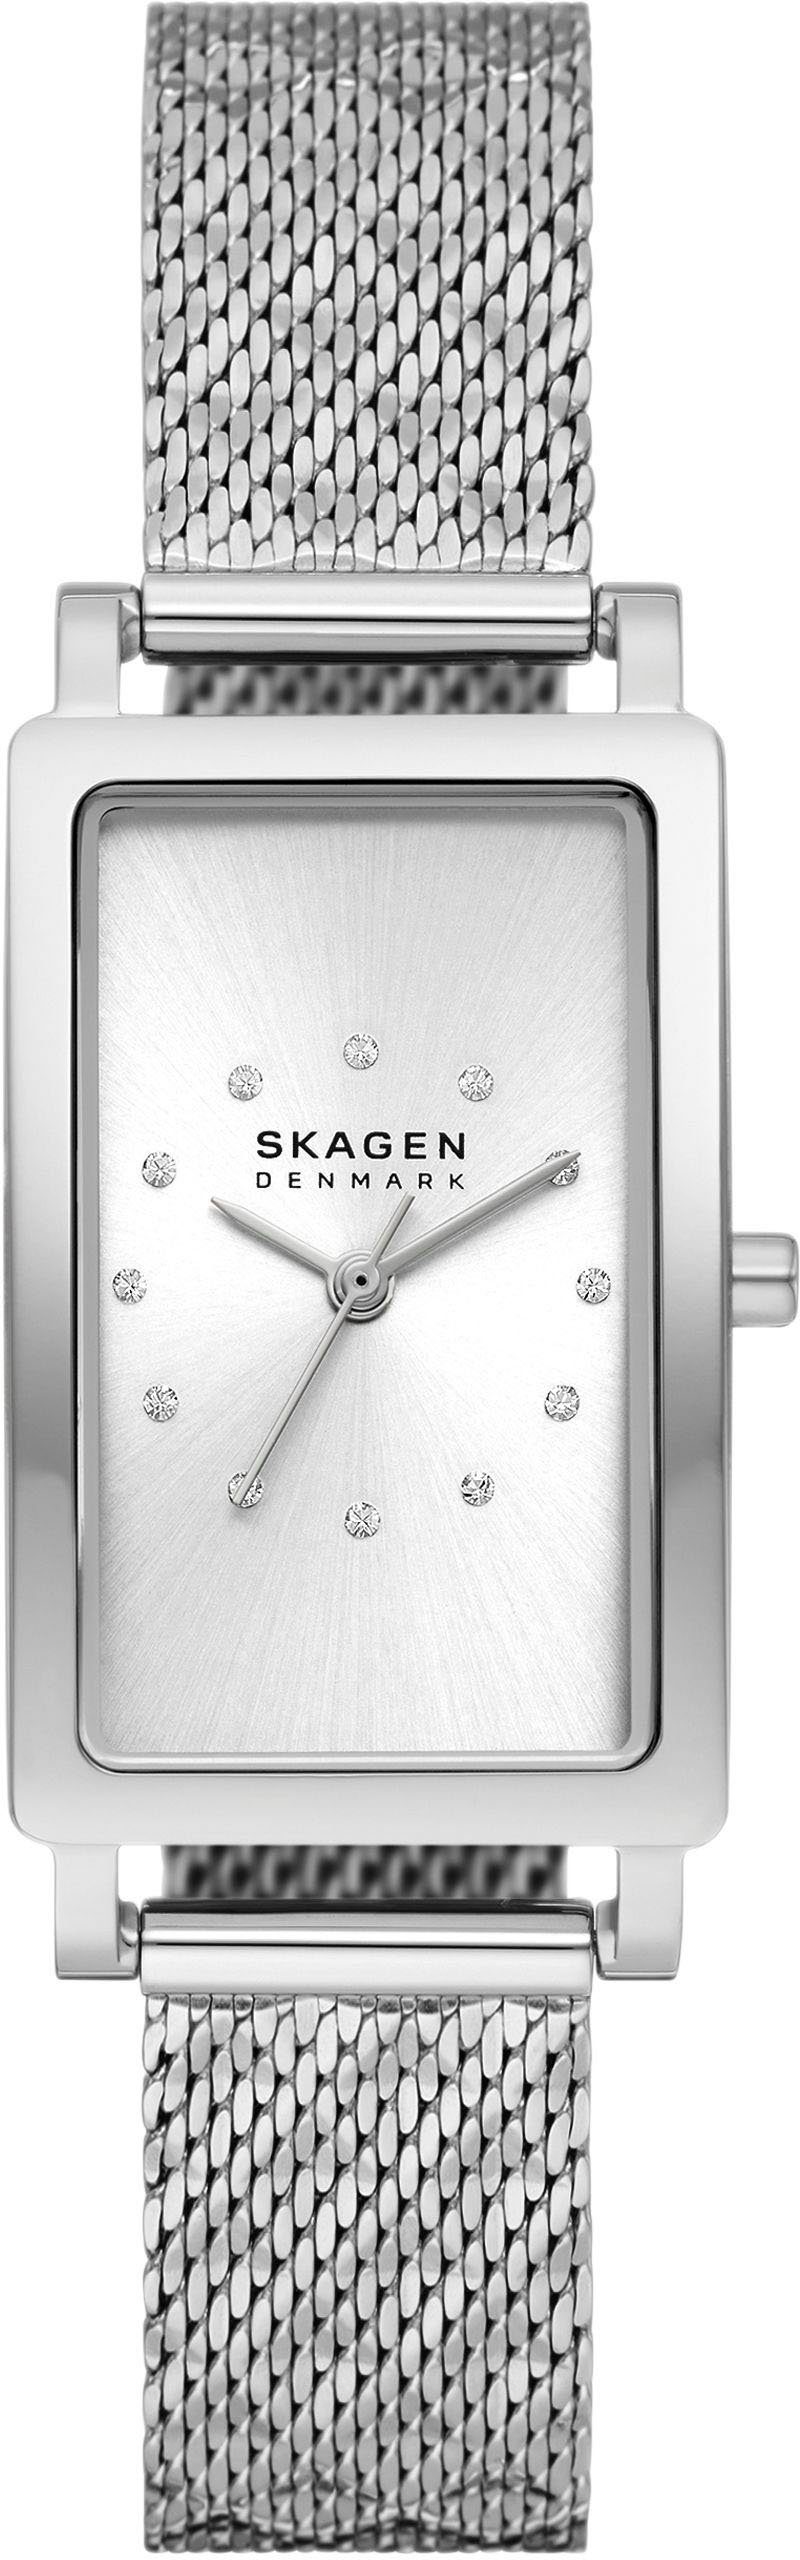 Skagen Quarzuhr HAGEN, SKW3115, Armbanduhr, Damenuhr, analog